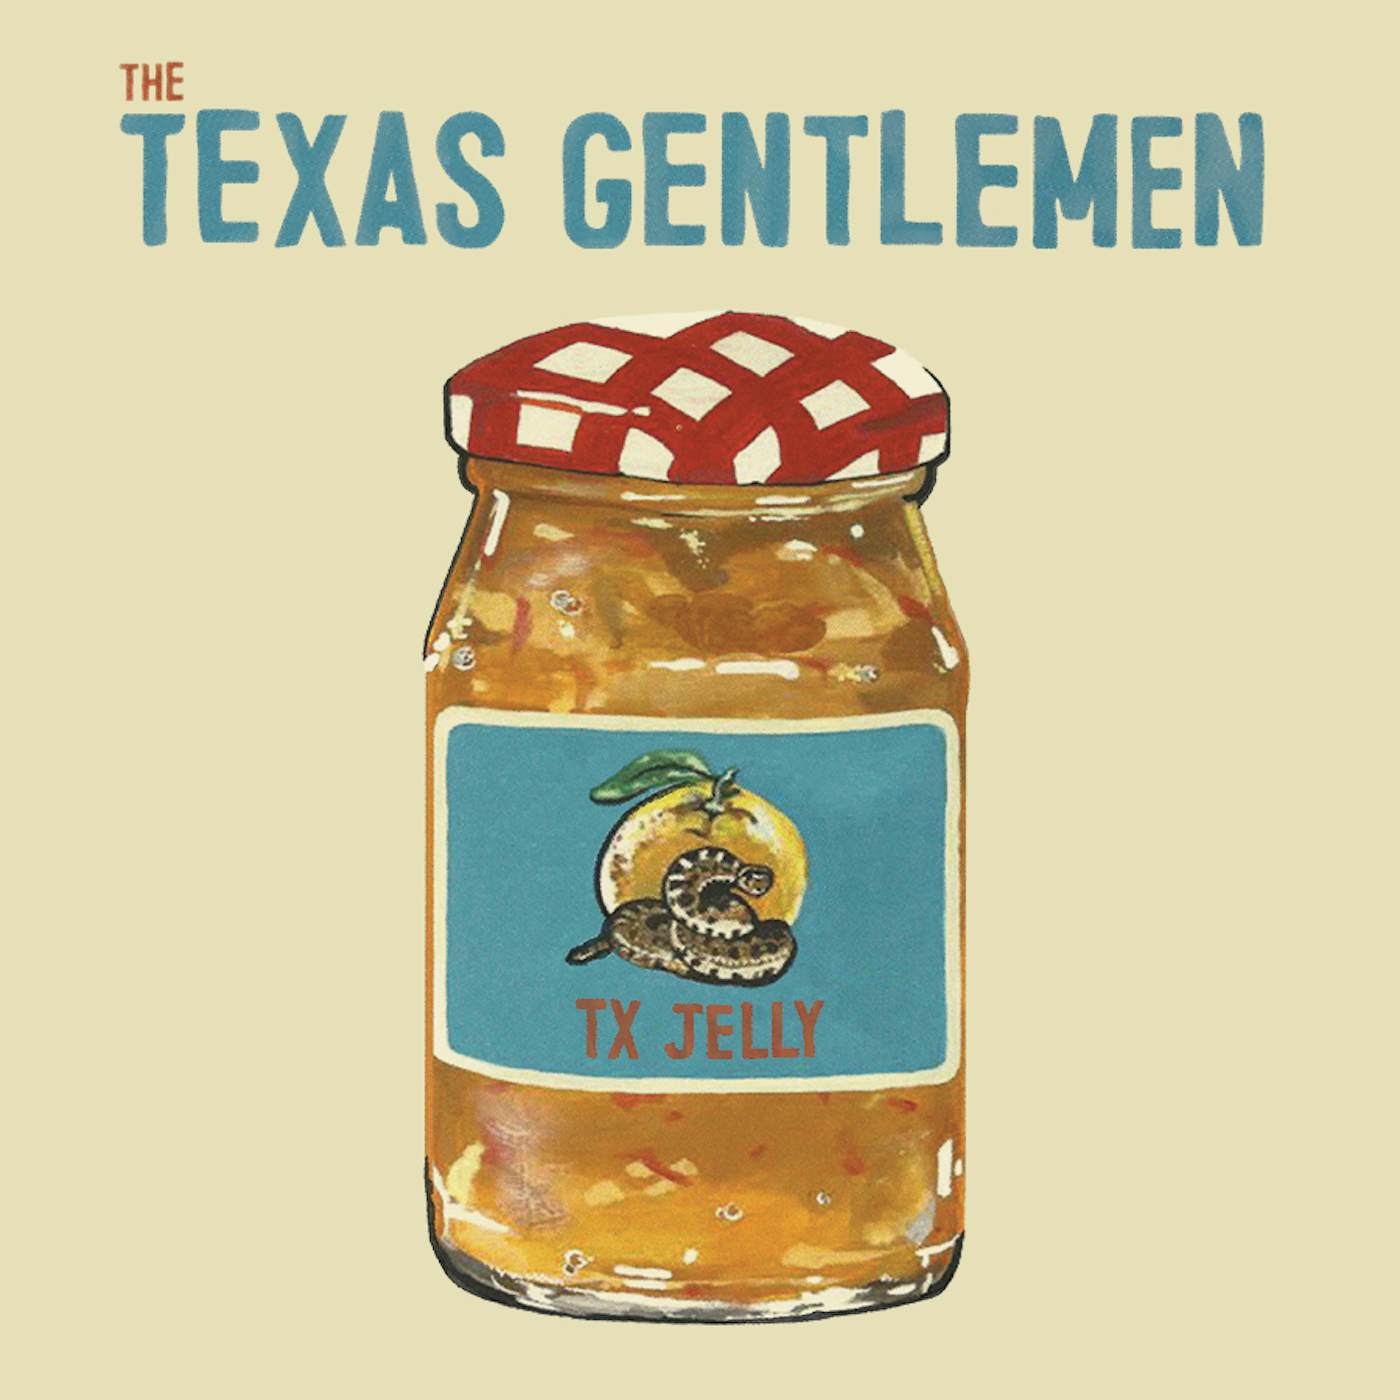 The Texas Gentlemen TX JELLY CD